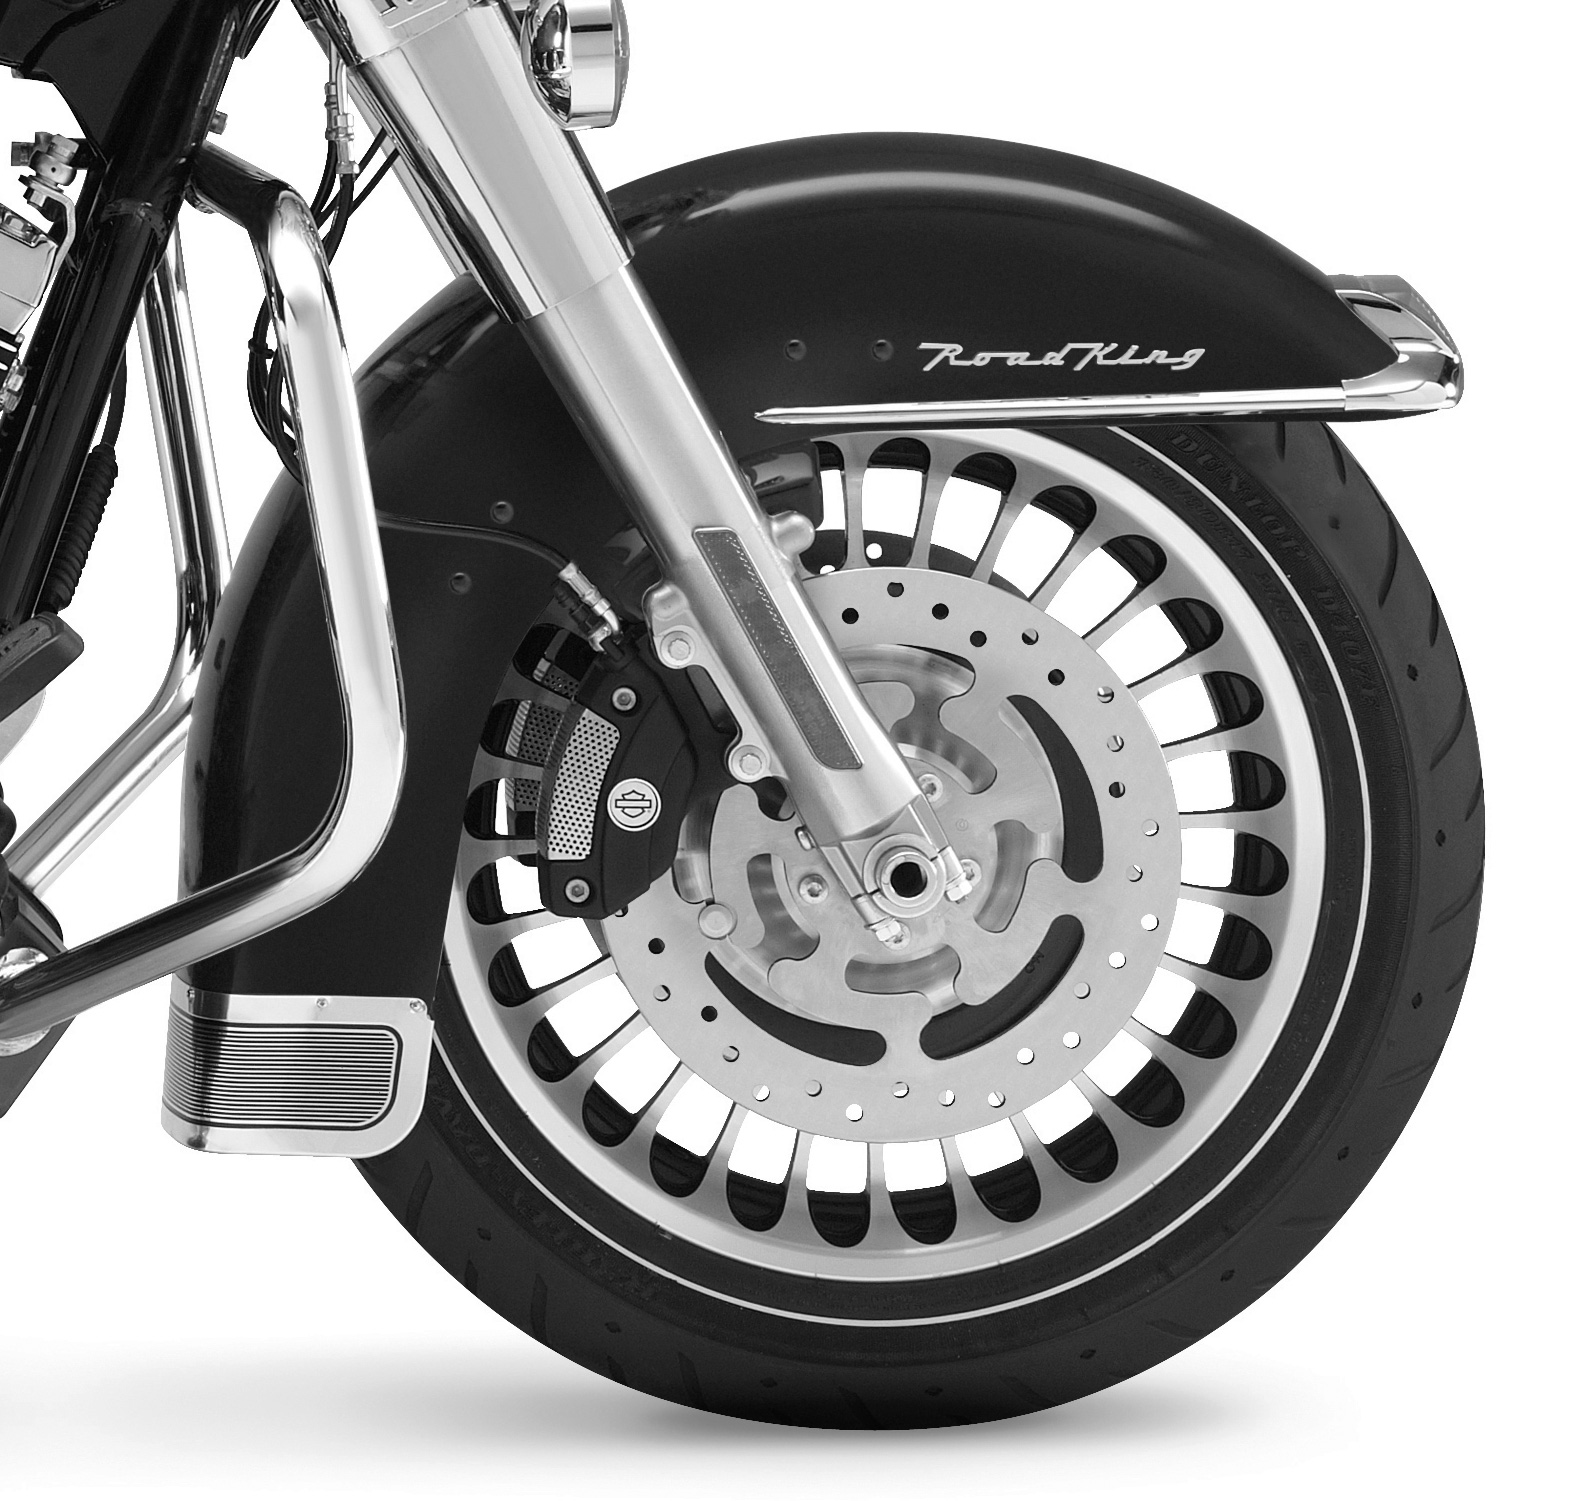 59087 00b Harley Davidson Original Front Fender Primed For Road King Ultra 00 13 At Thunderbike Shop